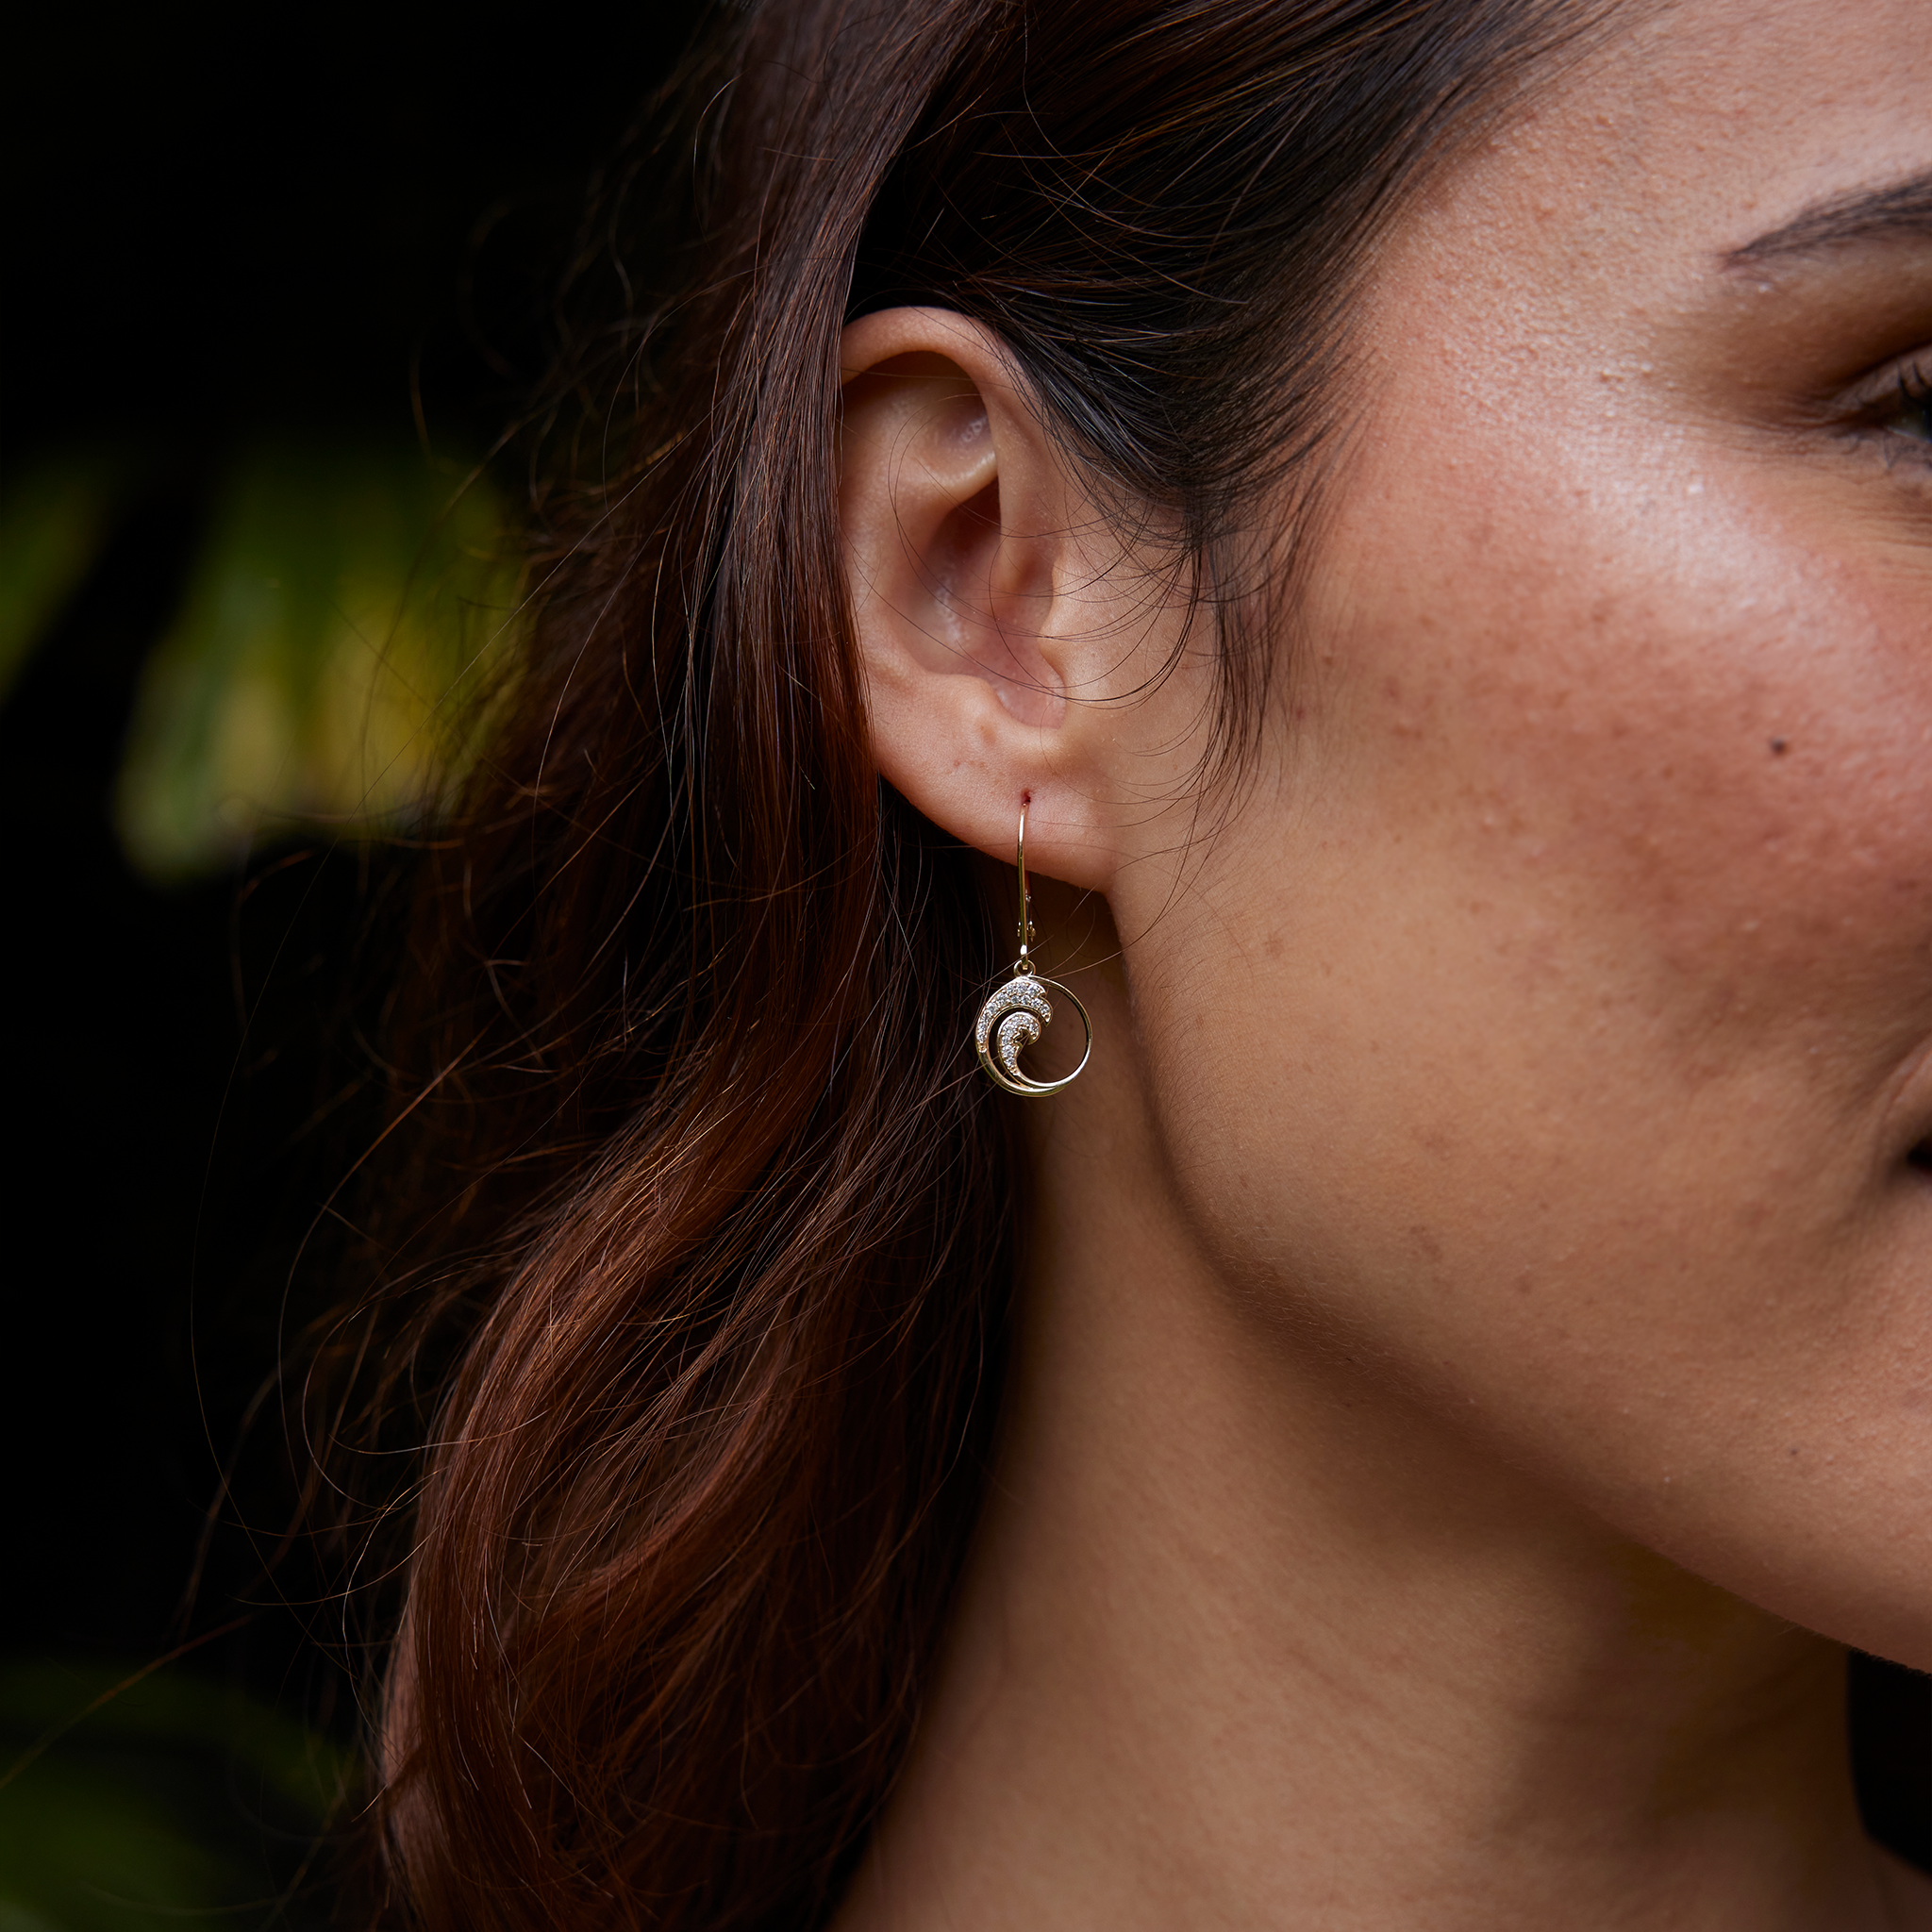 Nalu Earrings in Gold with Diamonds - 12mm